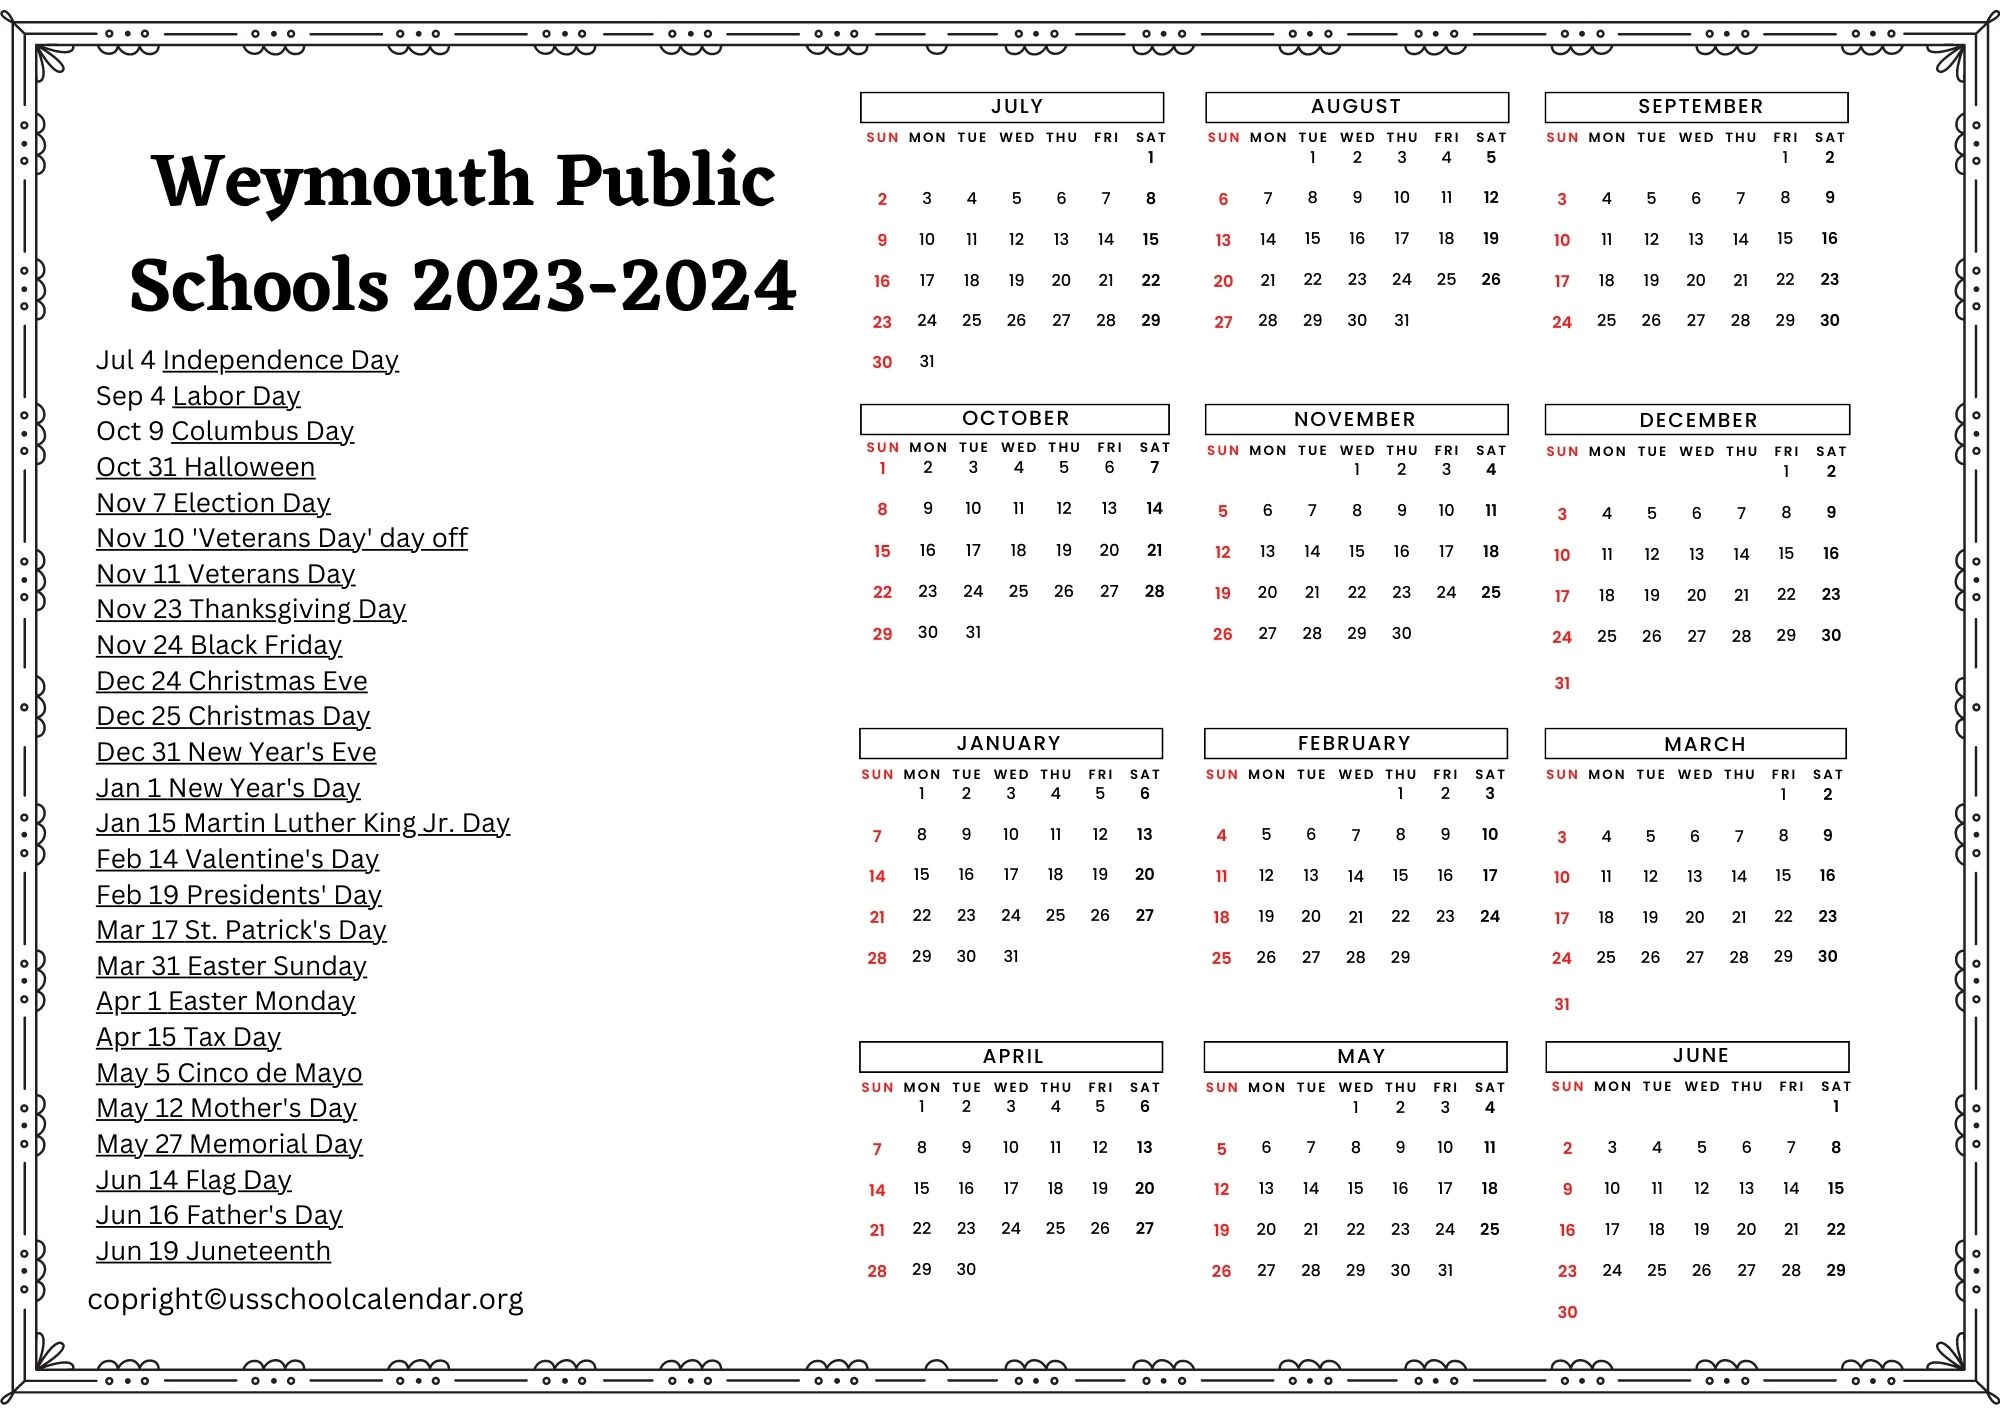 weymouth-public-schools-calendar-with-holidays-2023-2024